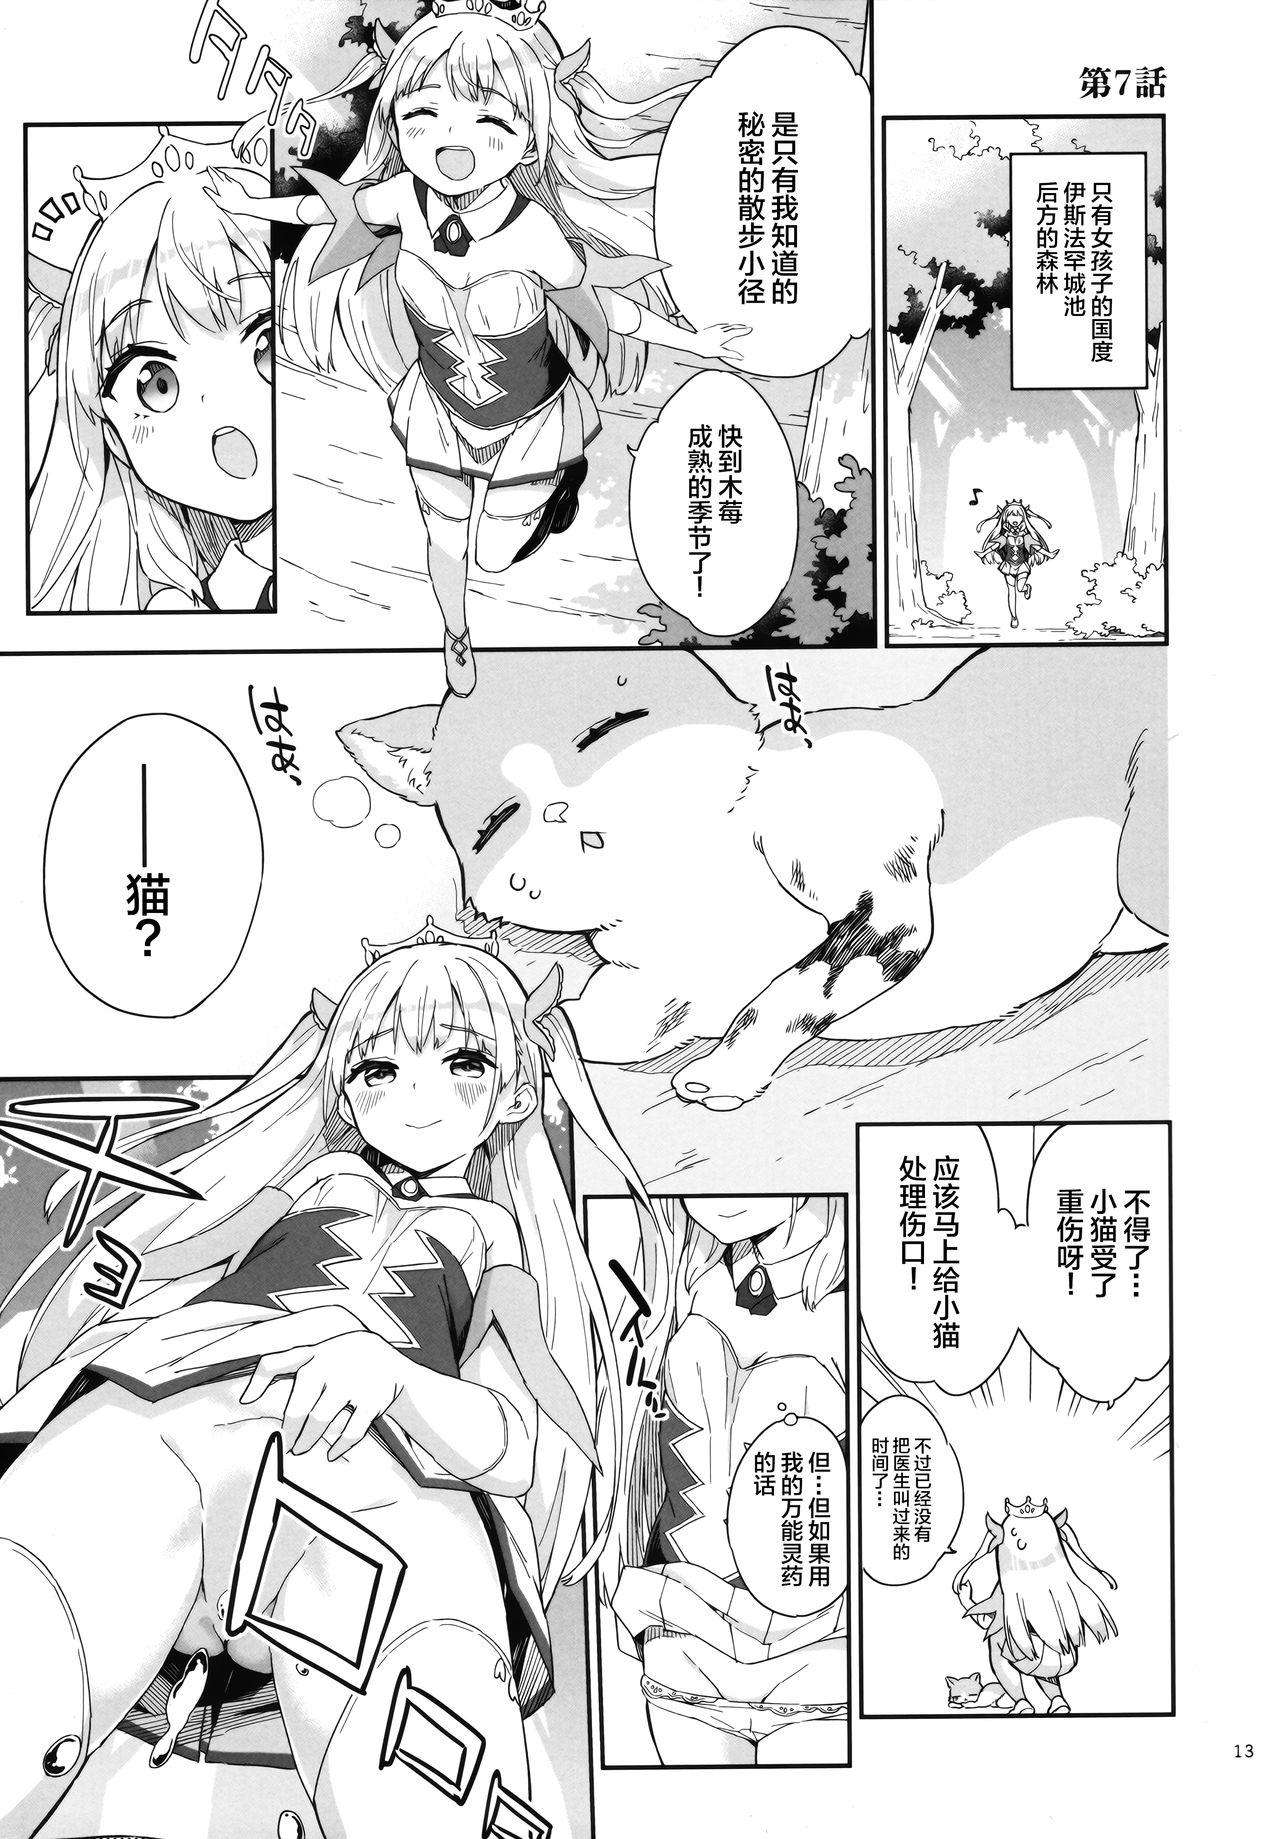 Cavalgando Hime-sama Sore wa Seisui desu ka? 3 Culo - Page 13